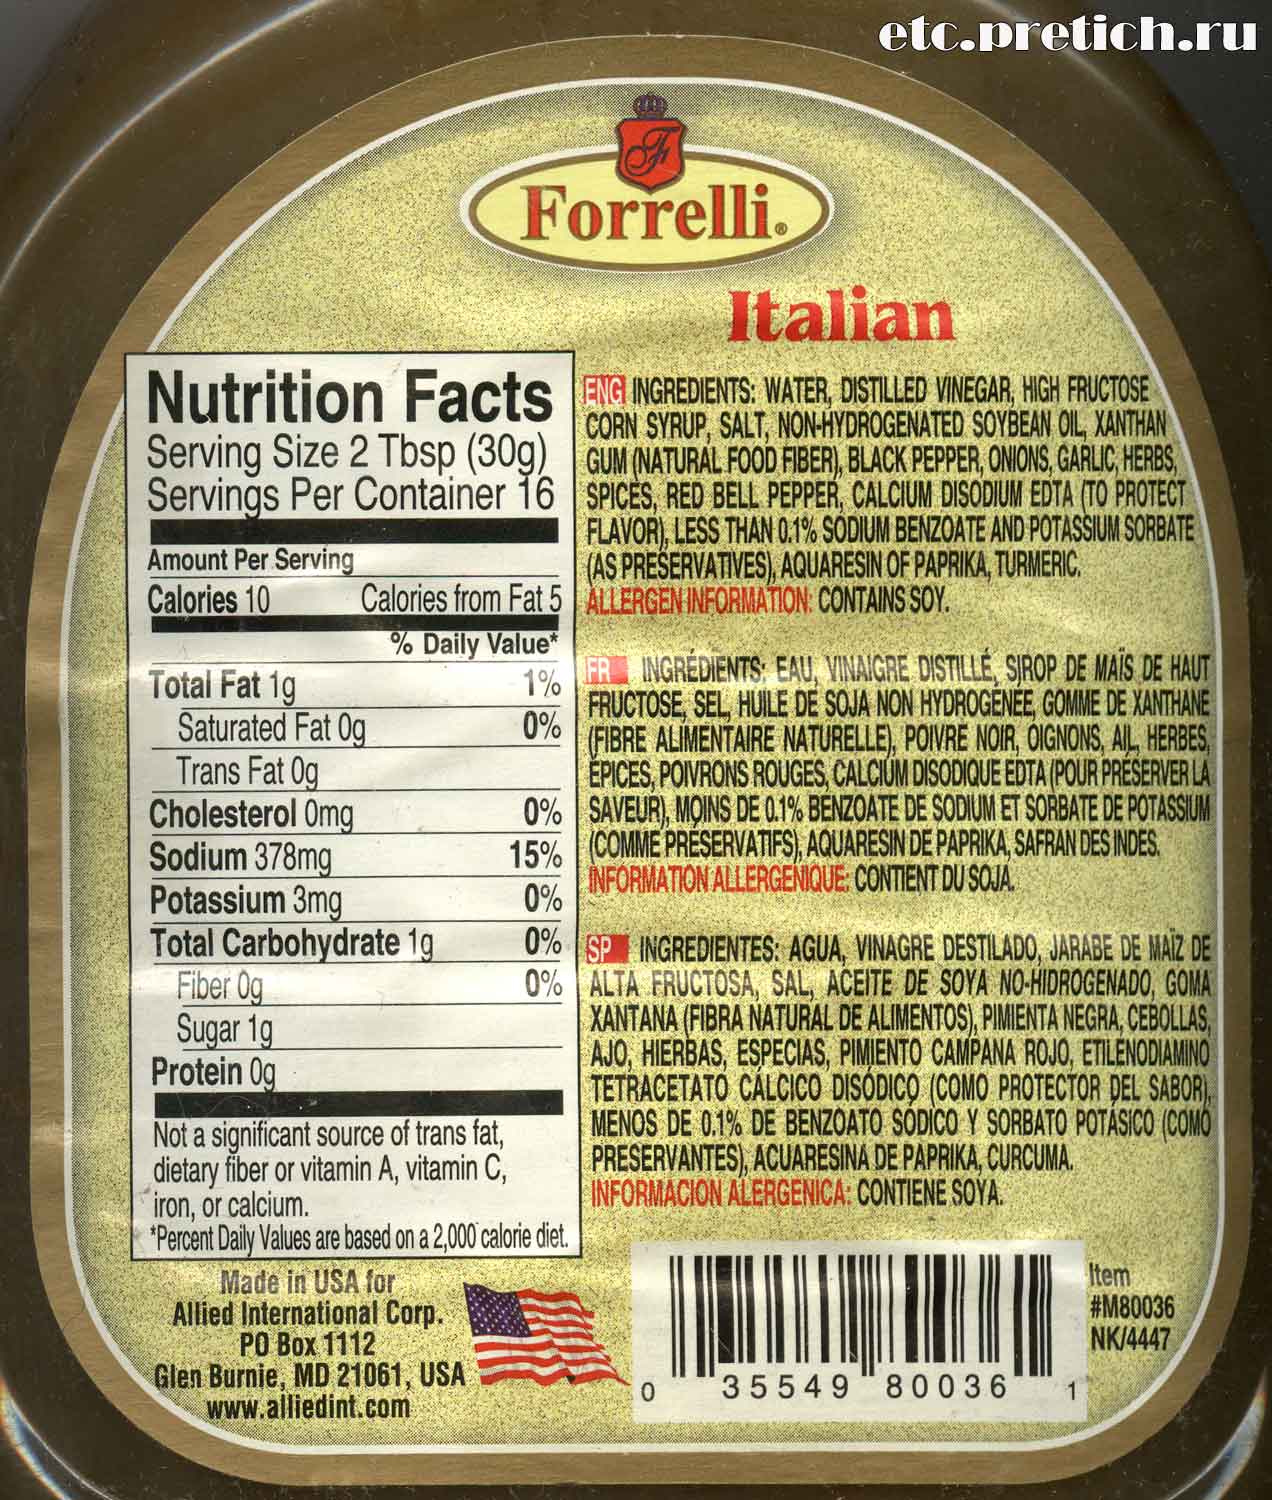 Forrelli Italian Dressing какой состав и как использовать этот соус?